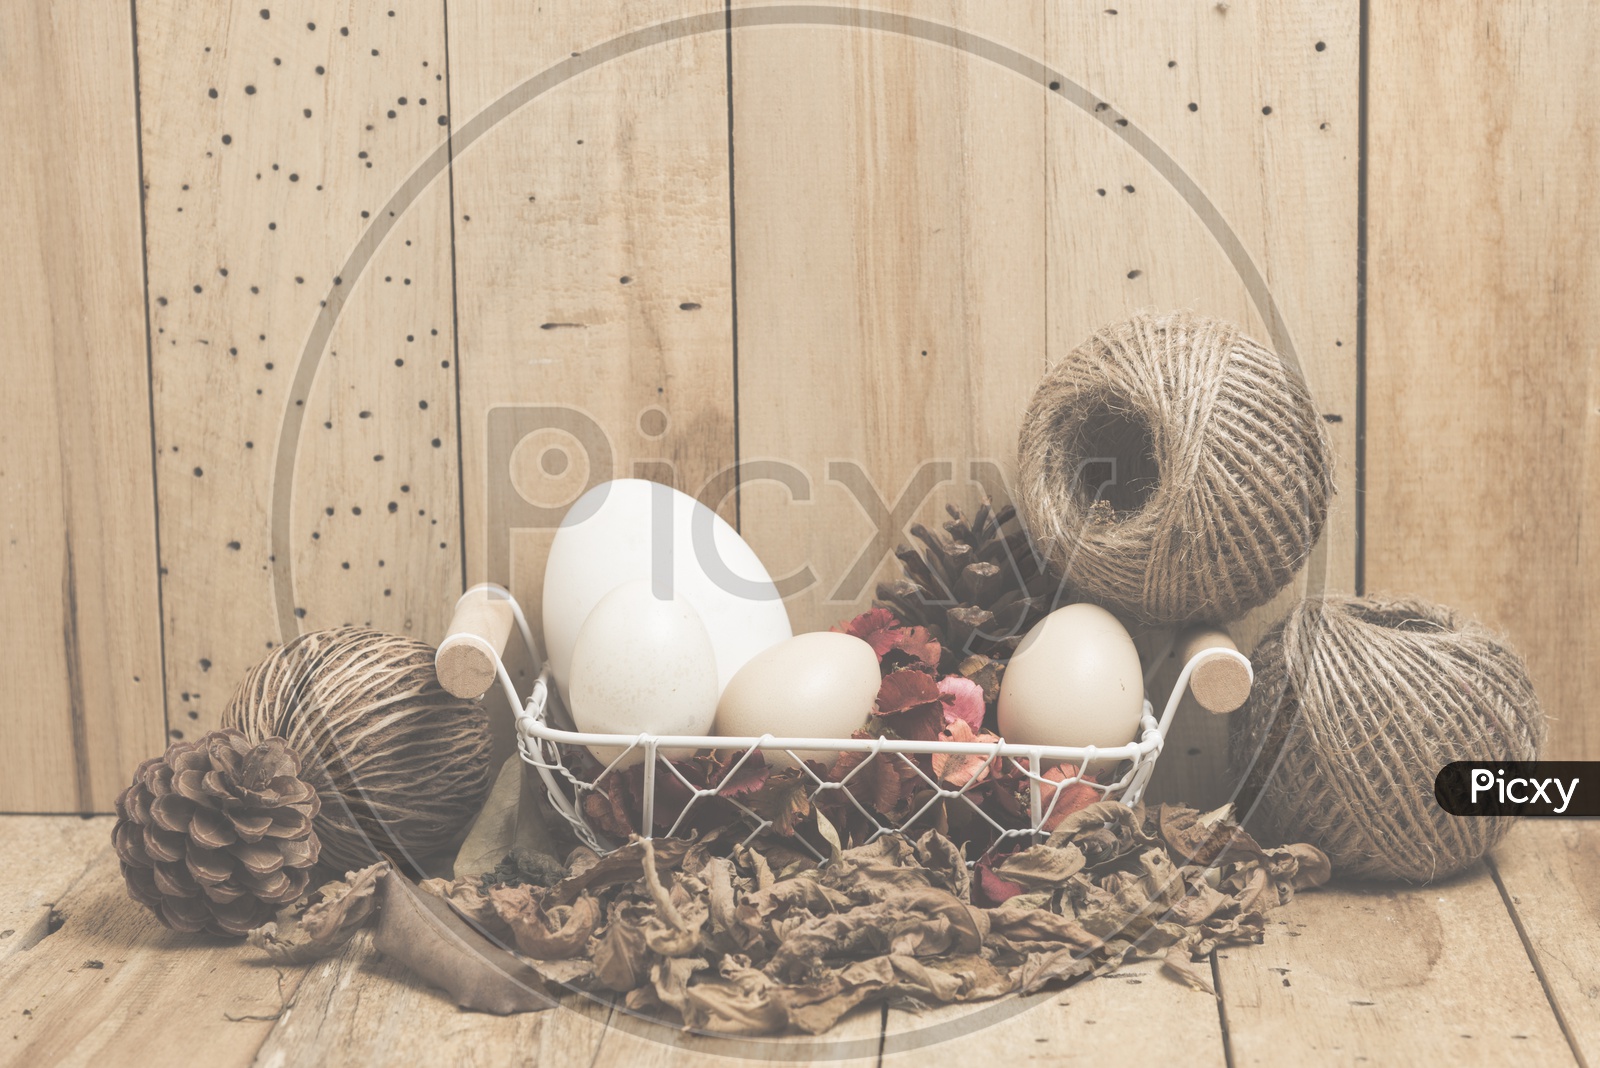 Easter eggs on wooden background, vintage filtered Images